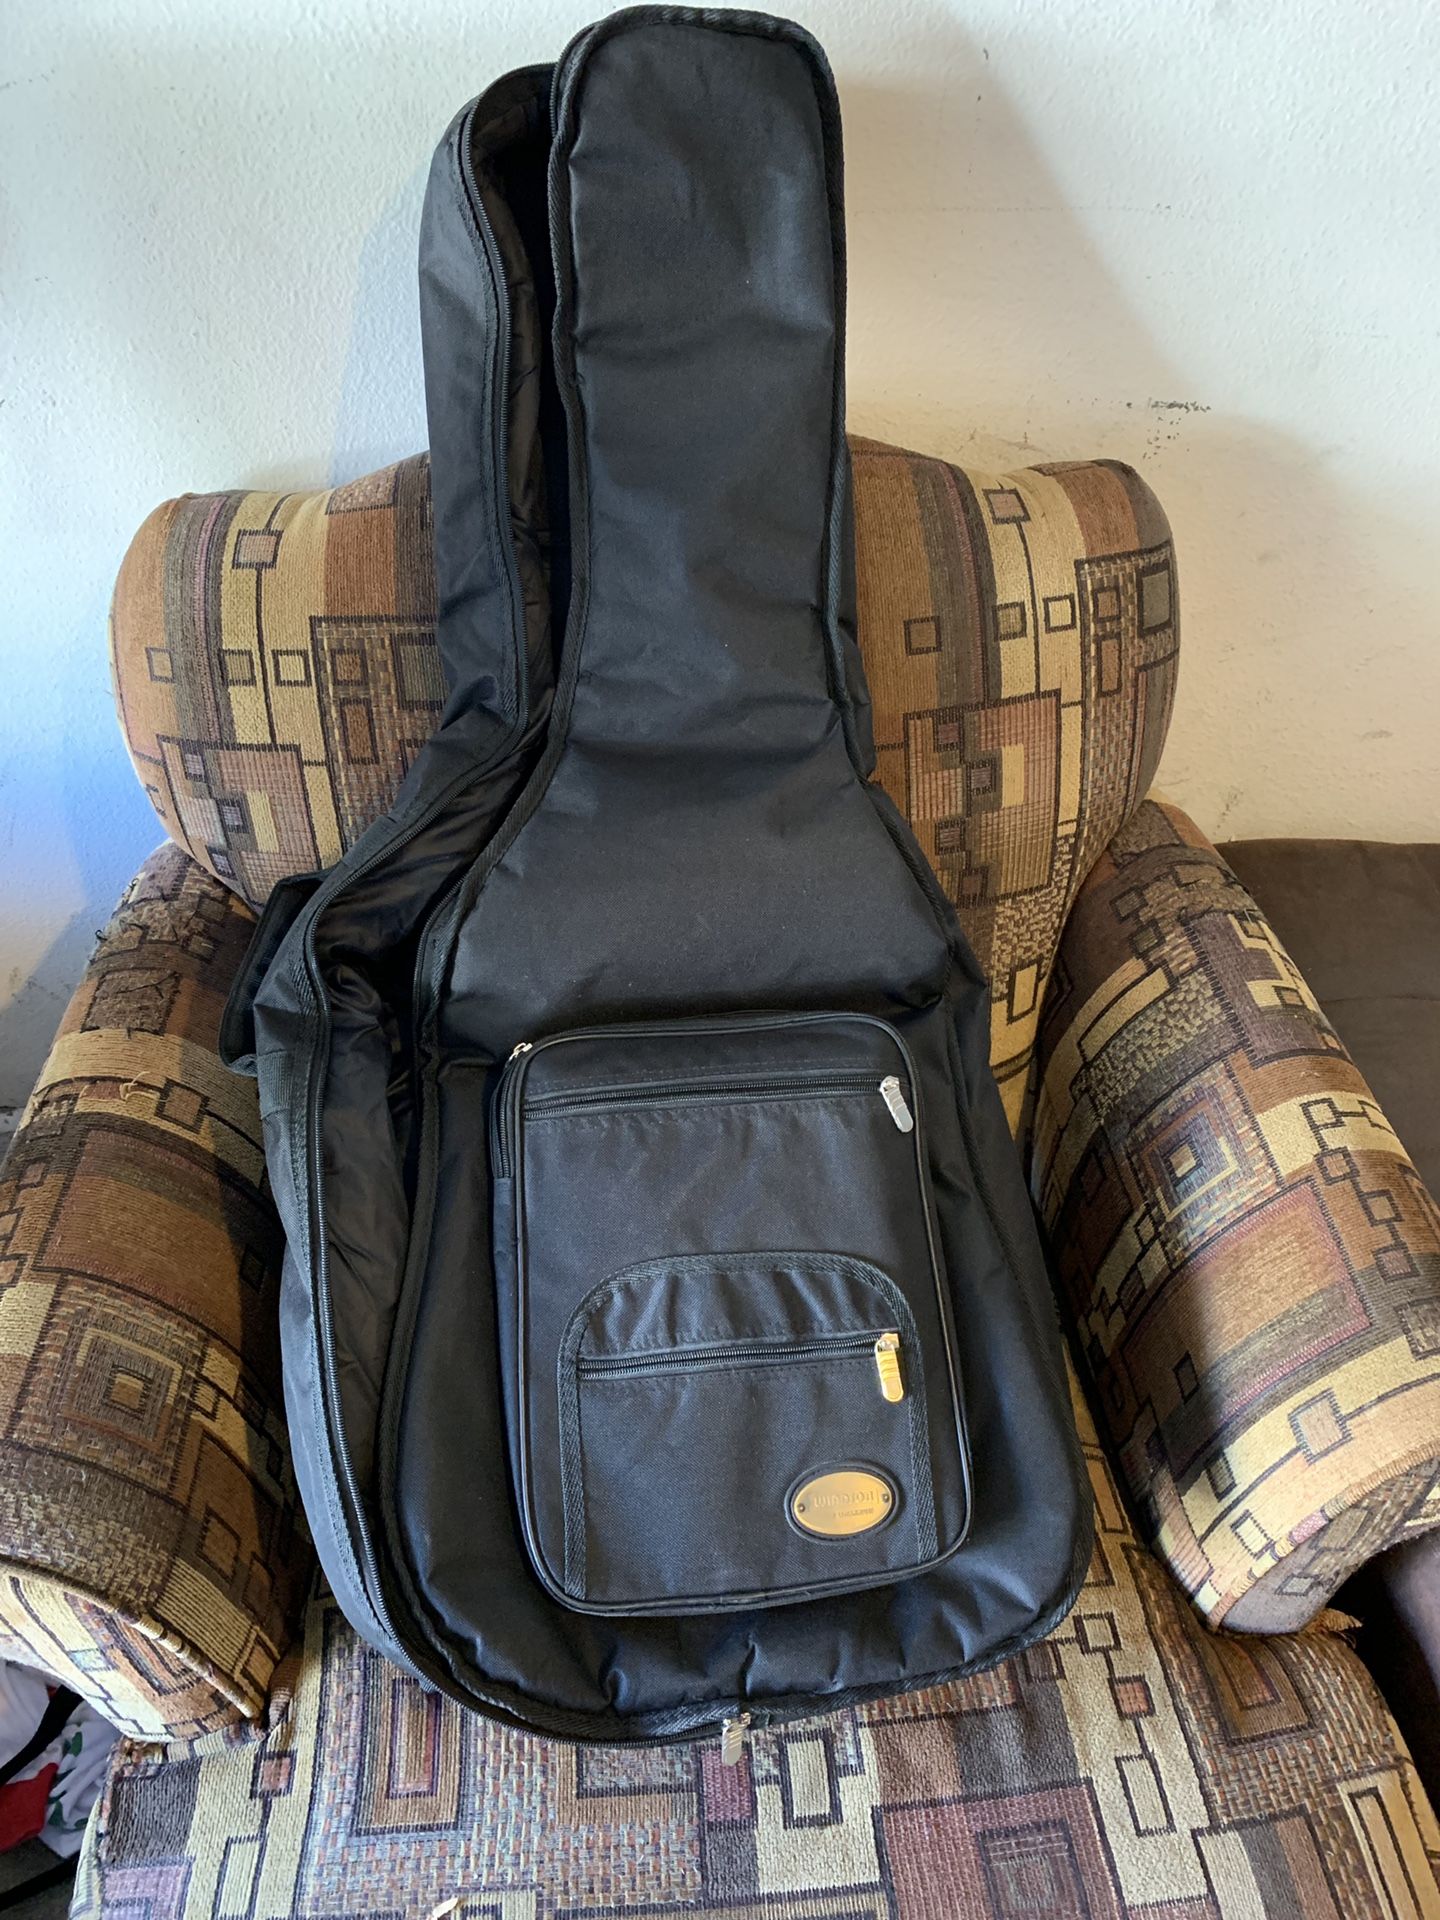 Guitar bag excellent condition